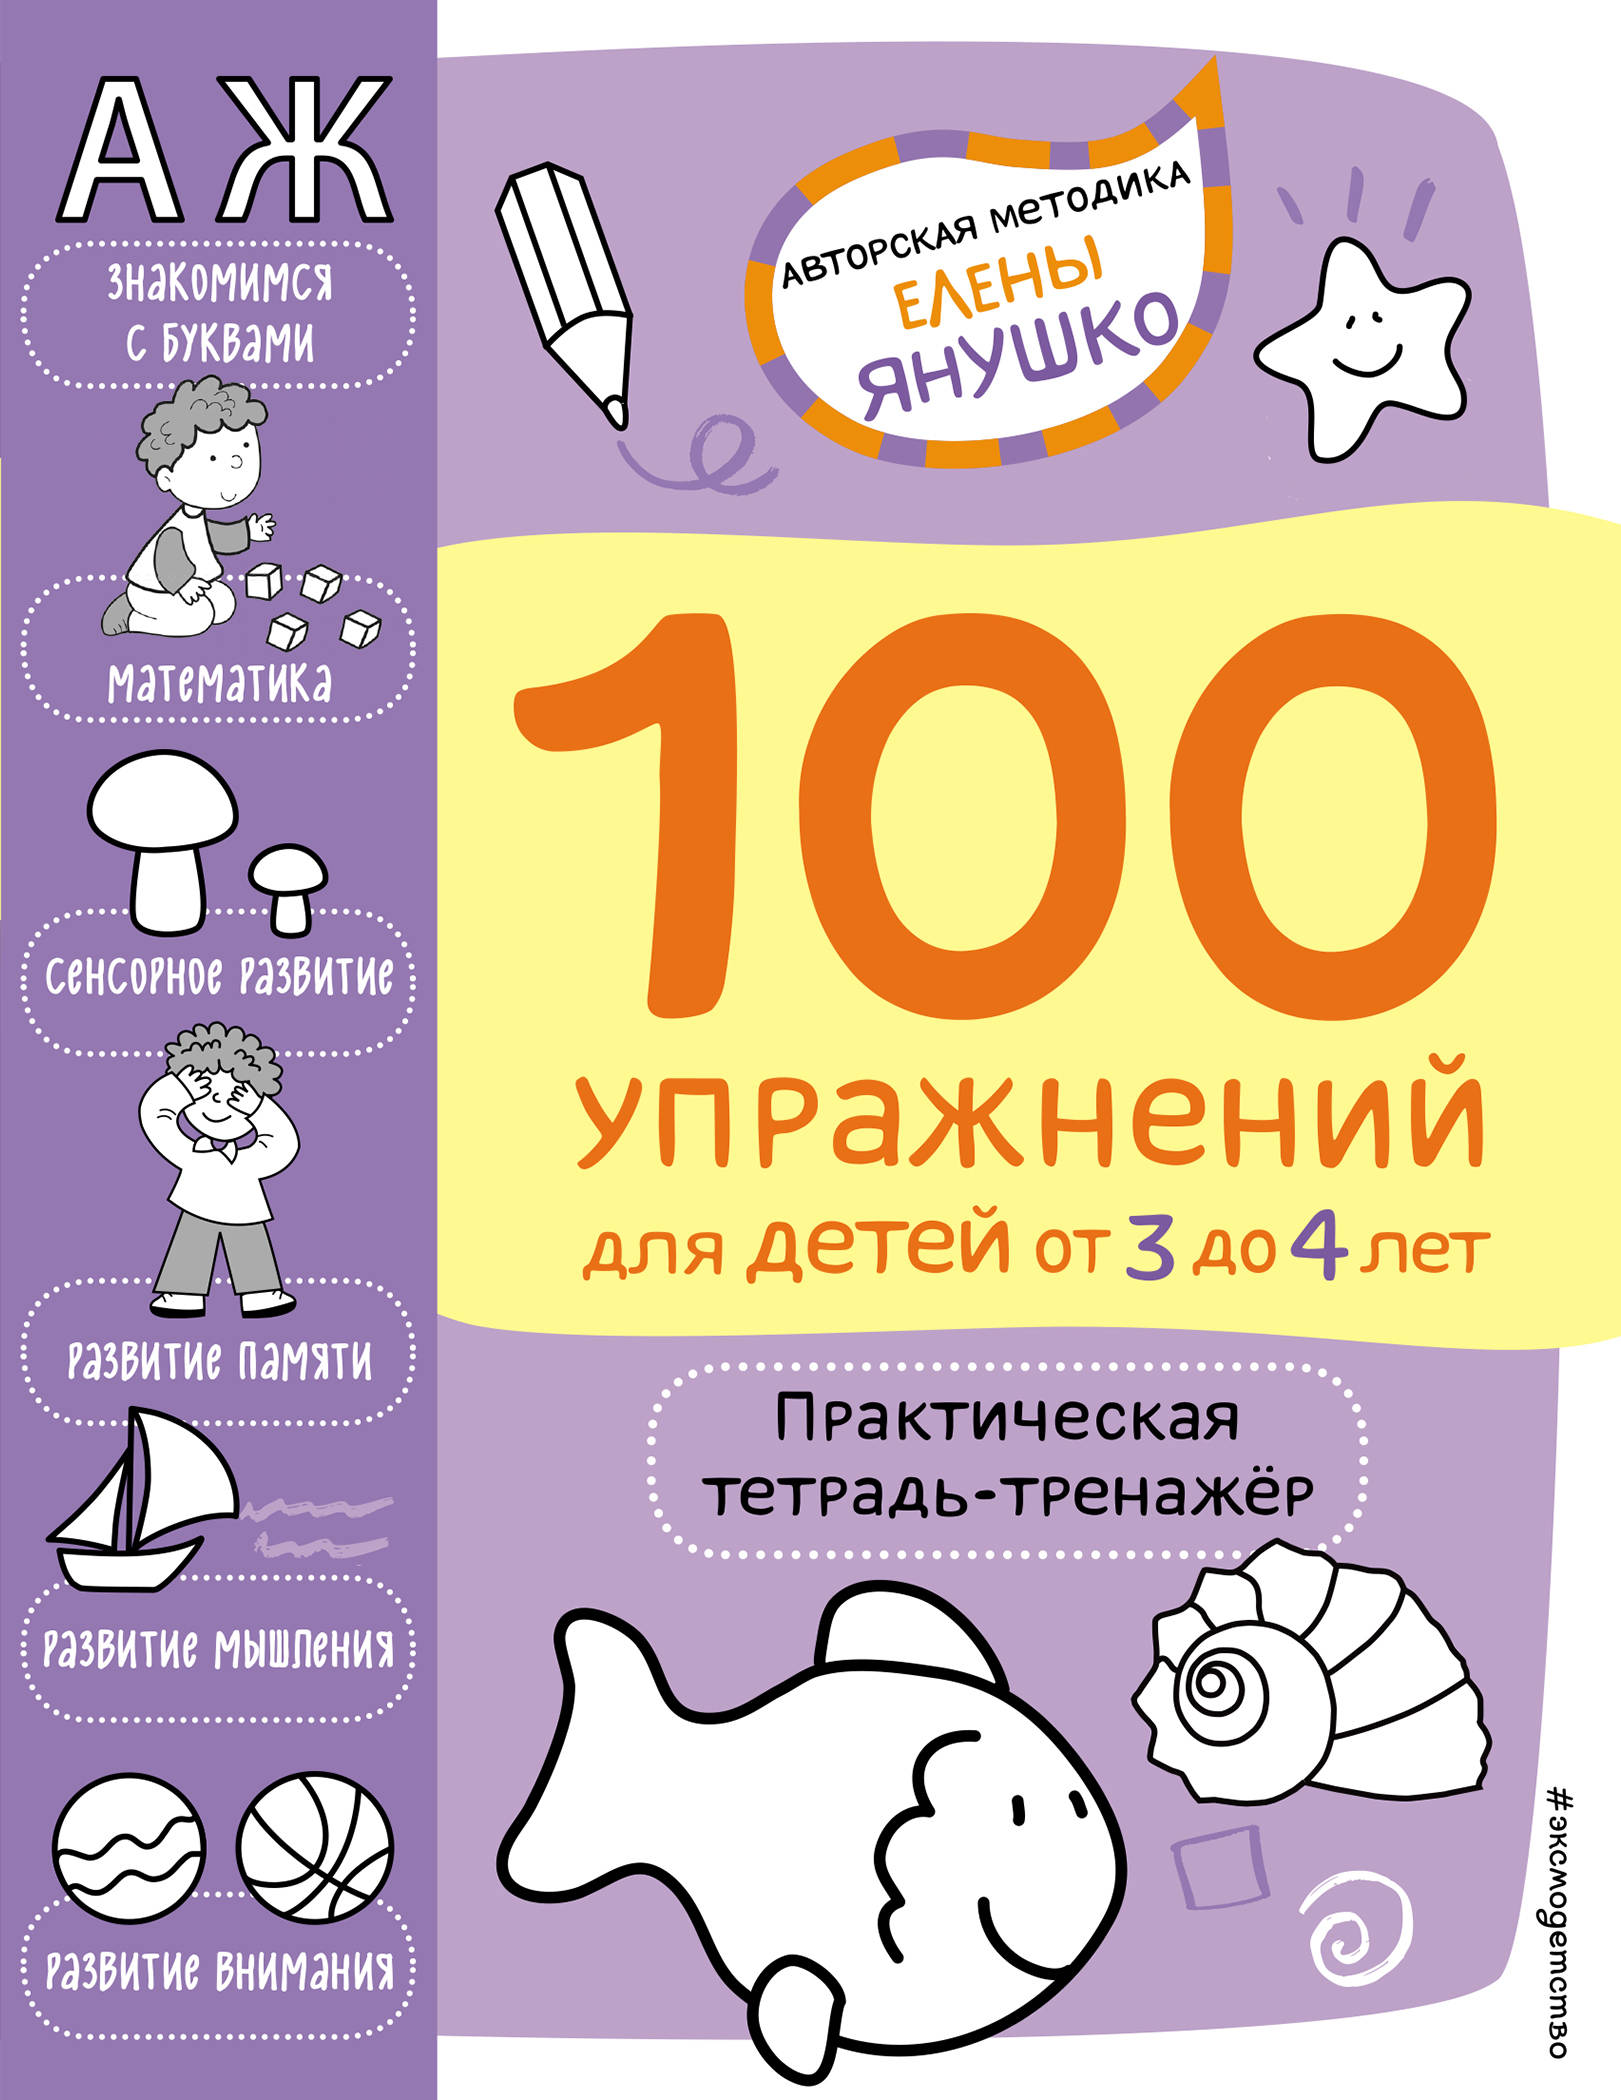 Янушко Е.А. 3+ 100 упражнений для детей от 3 до 4 лет. Практическая тетрадь-тренажёр 